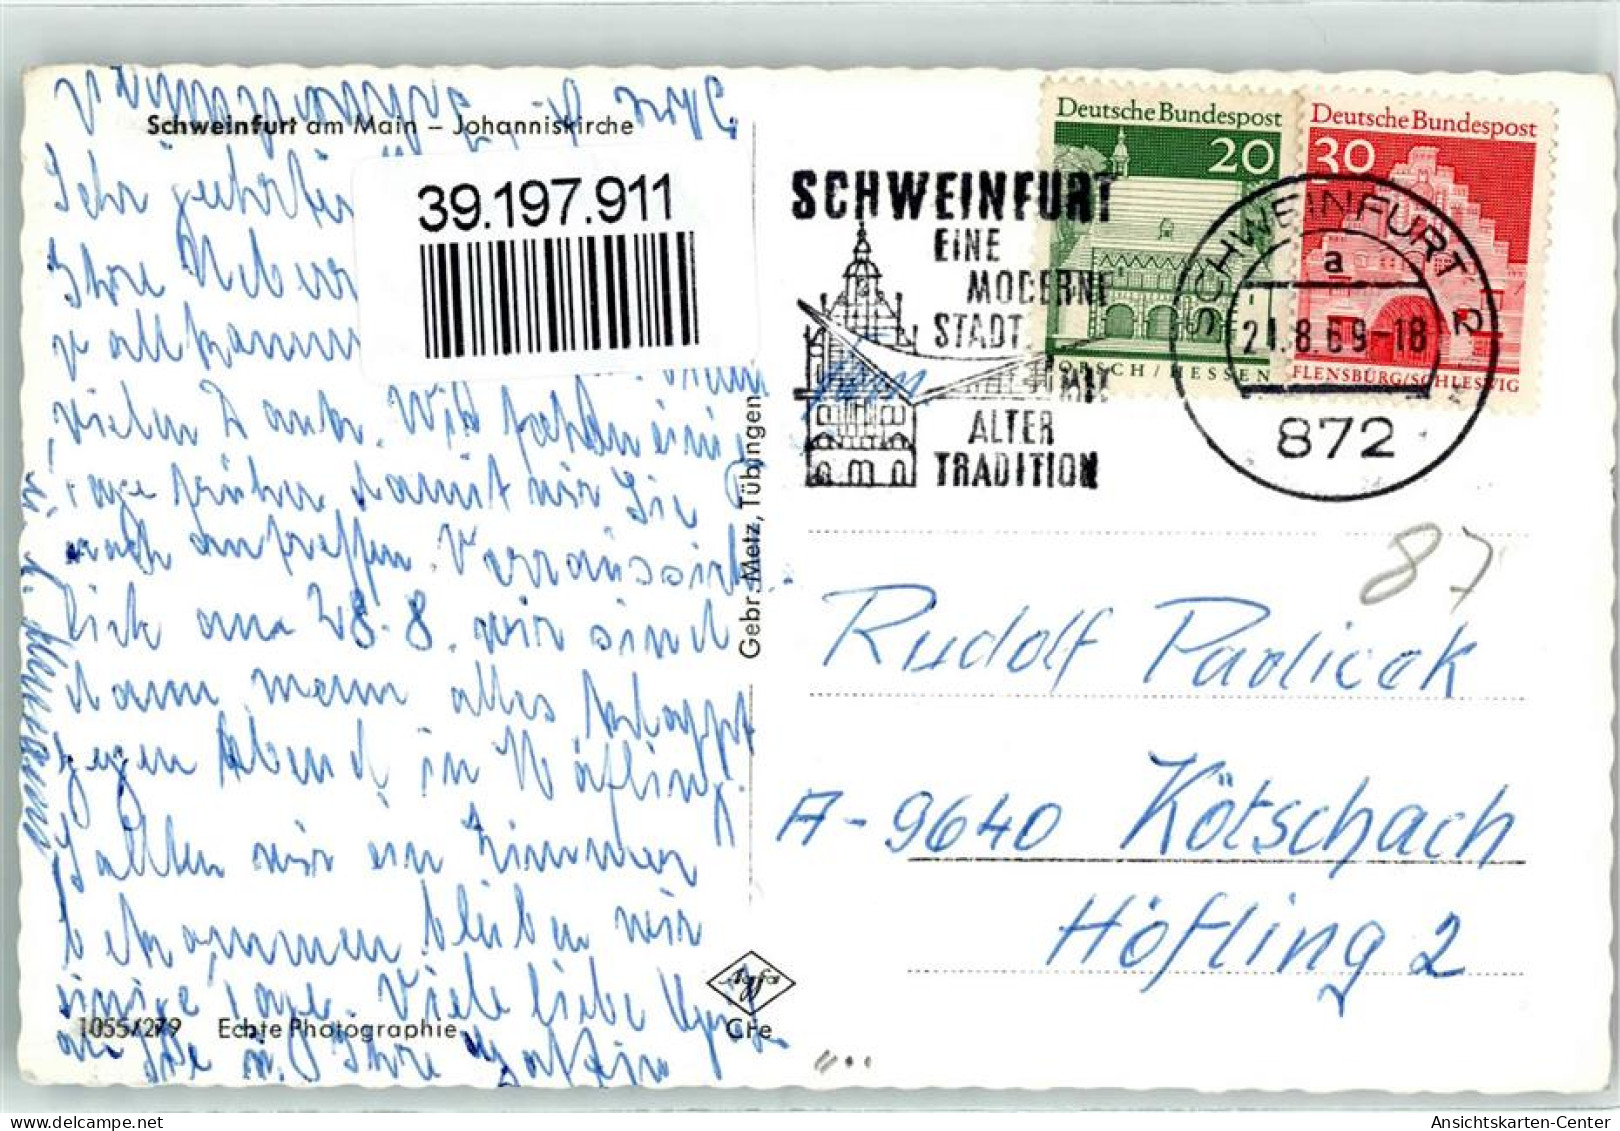 39197911 - Schweinfurt - Schweinfurt